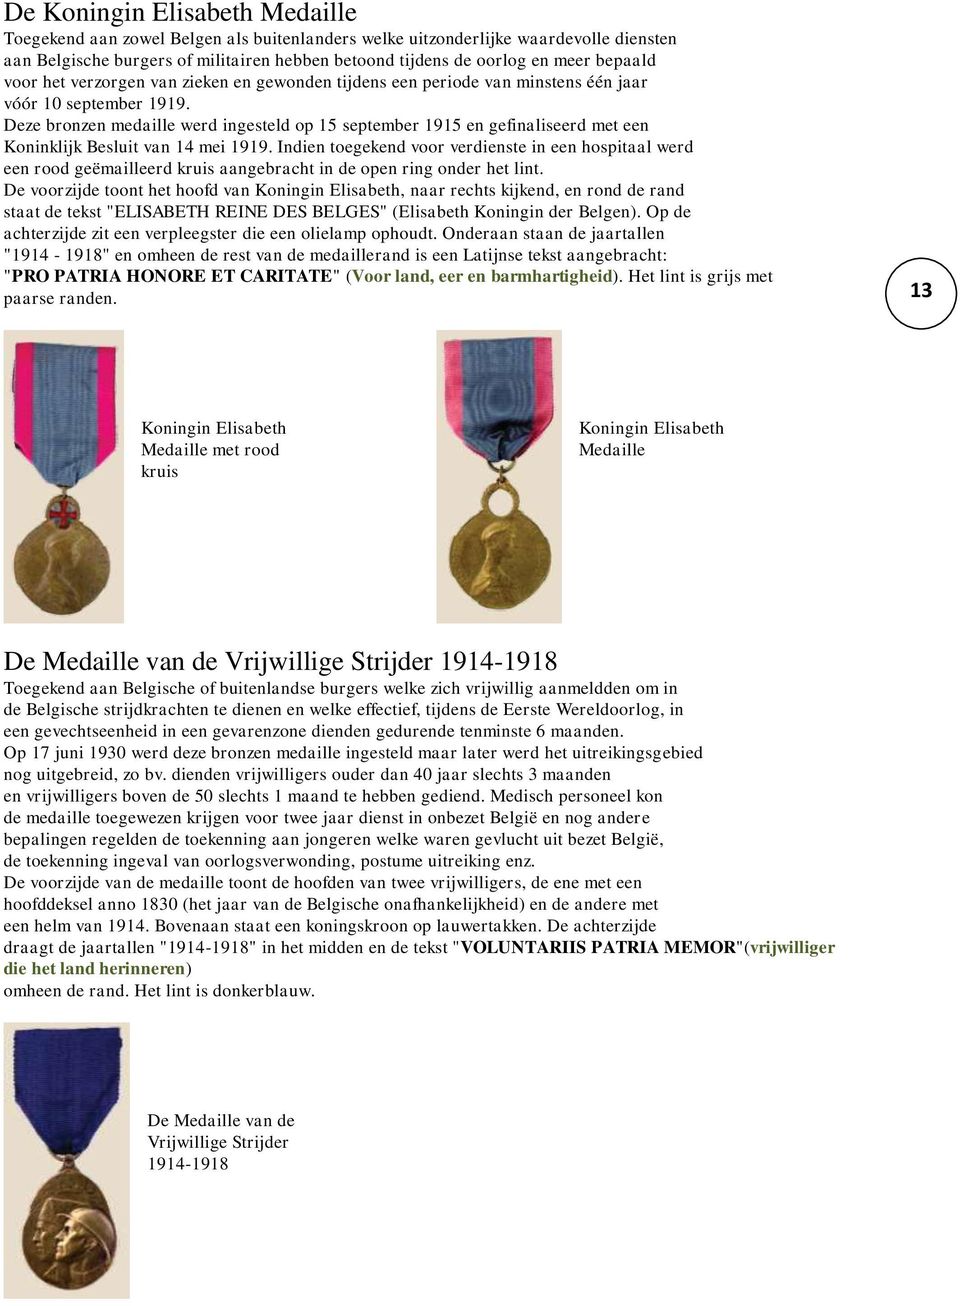 Deze bronzen medaille werd ingesteld op 15 september 1915 en gefinaliseerd met een Koninklijk Besluit van 14 mei 1919.